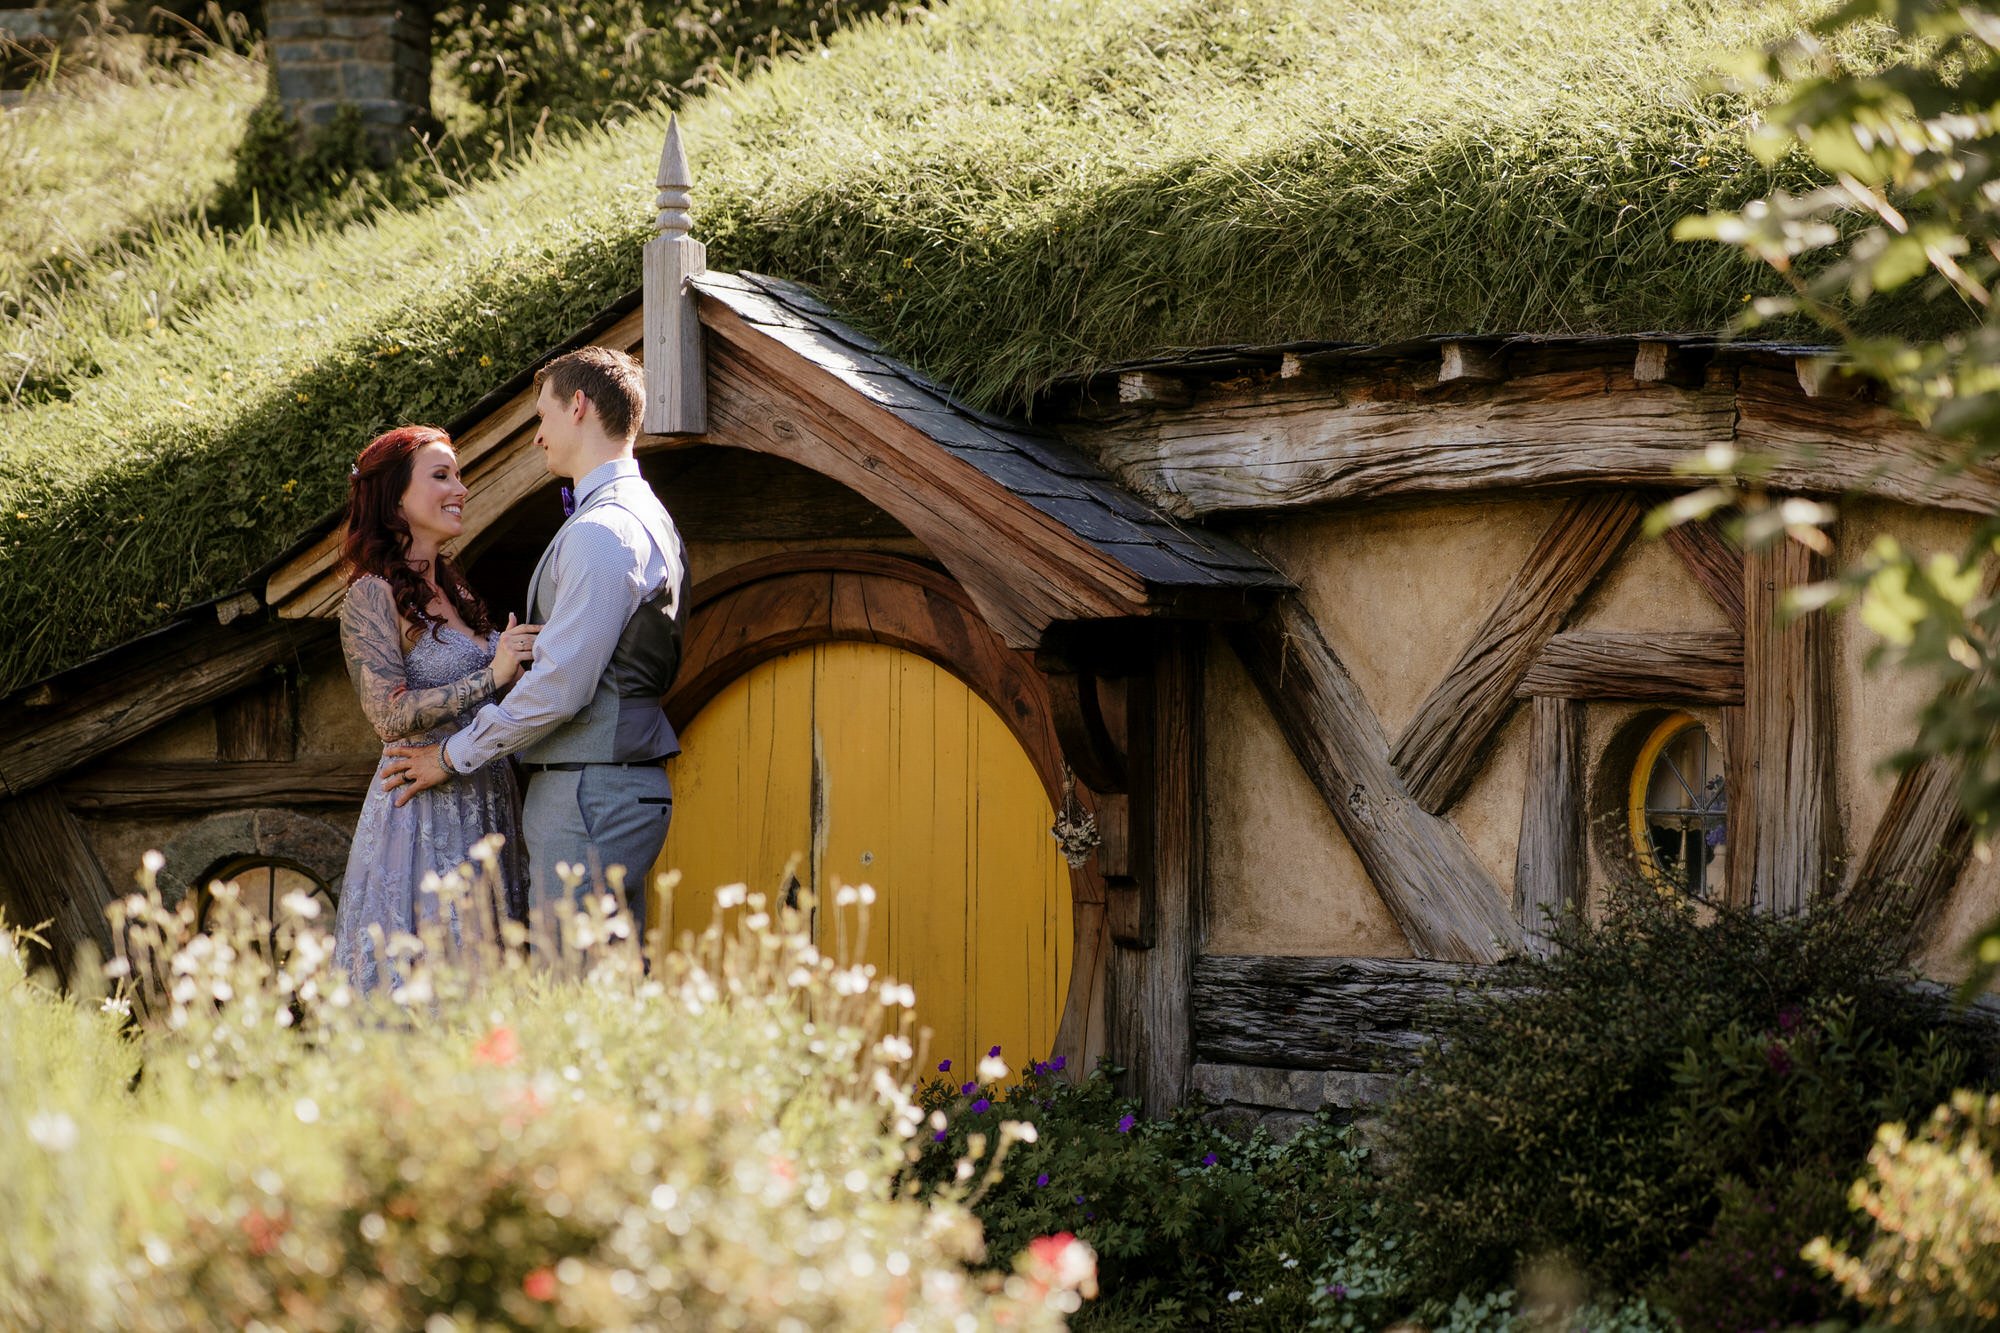 hobbiton-tour-matamata-best-wedding-venue-top-photographer-auckland-videography-elopement-unique-hobbit-destination-dear-white-productions (146).JPG